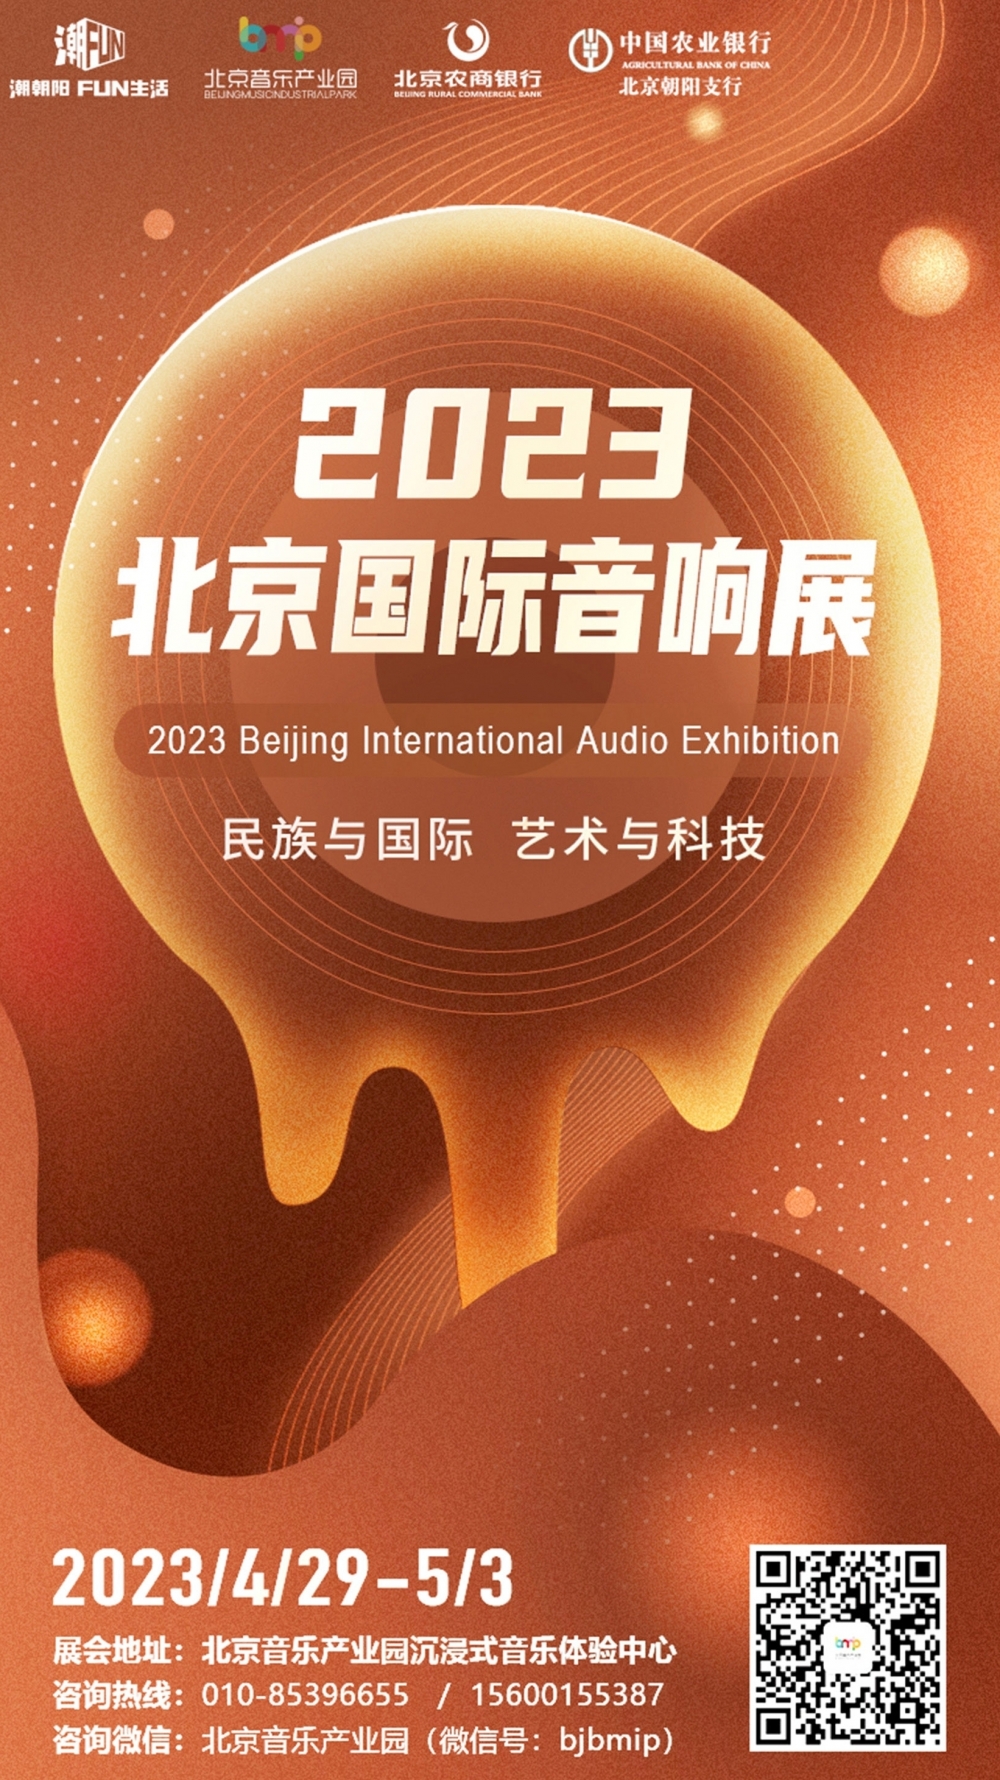 Beijing International Audio Exhibition 2023 - Mastersound